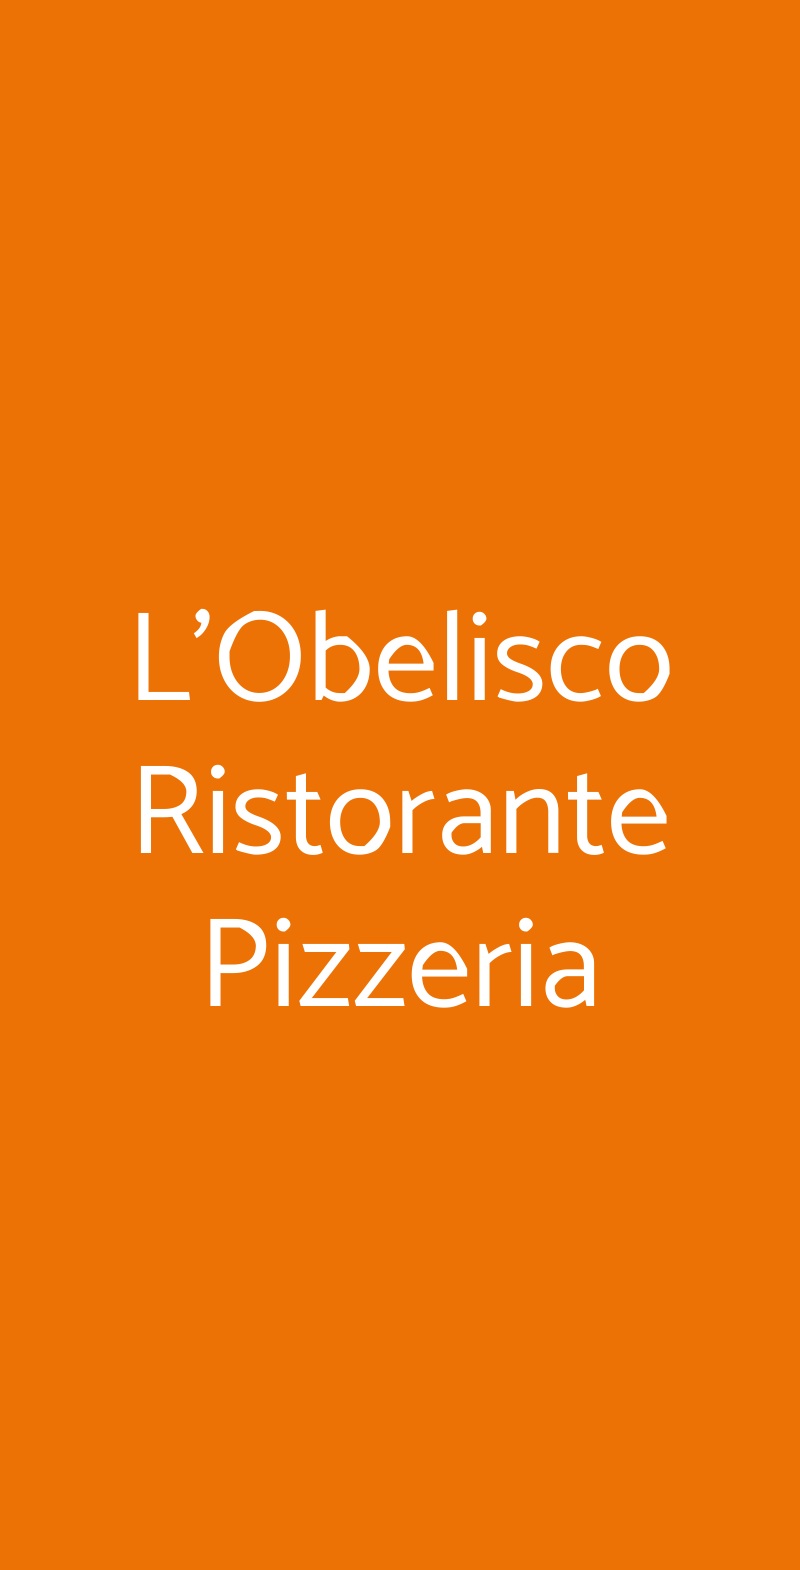 L'Obelisco Ristorante Pizzeria Lecce menù 1 pagina